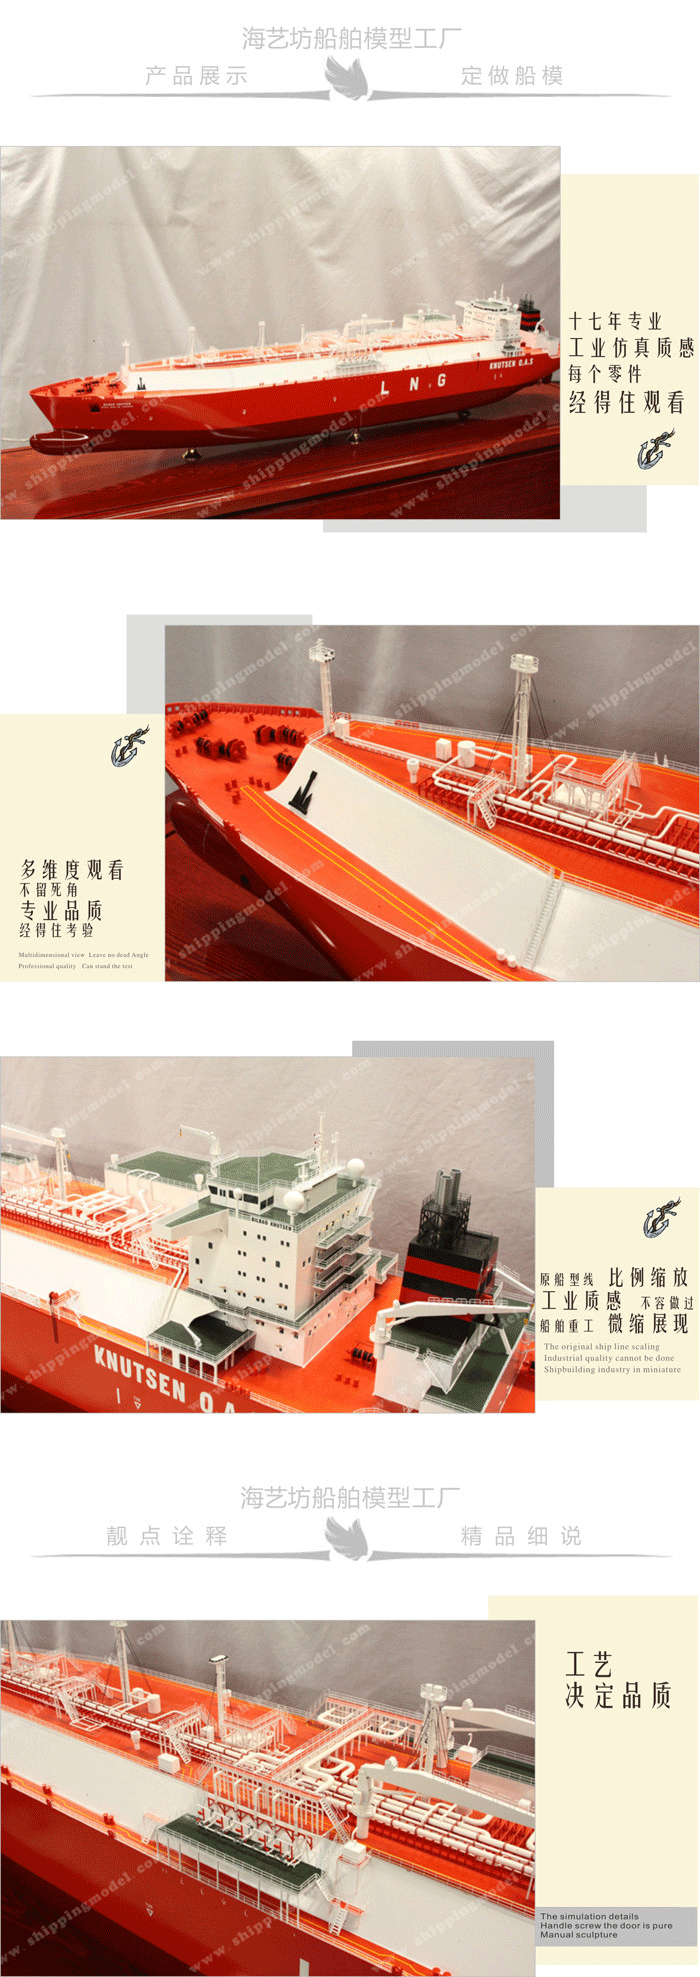 100cm天然气LNG船舶模型定制